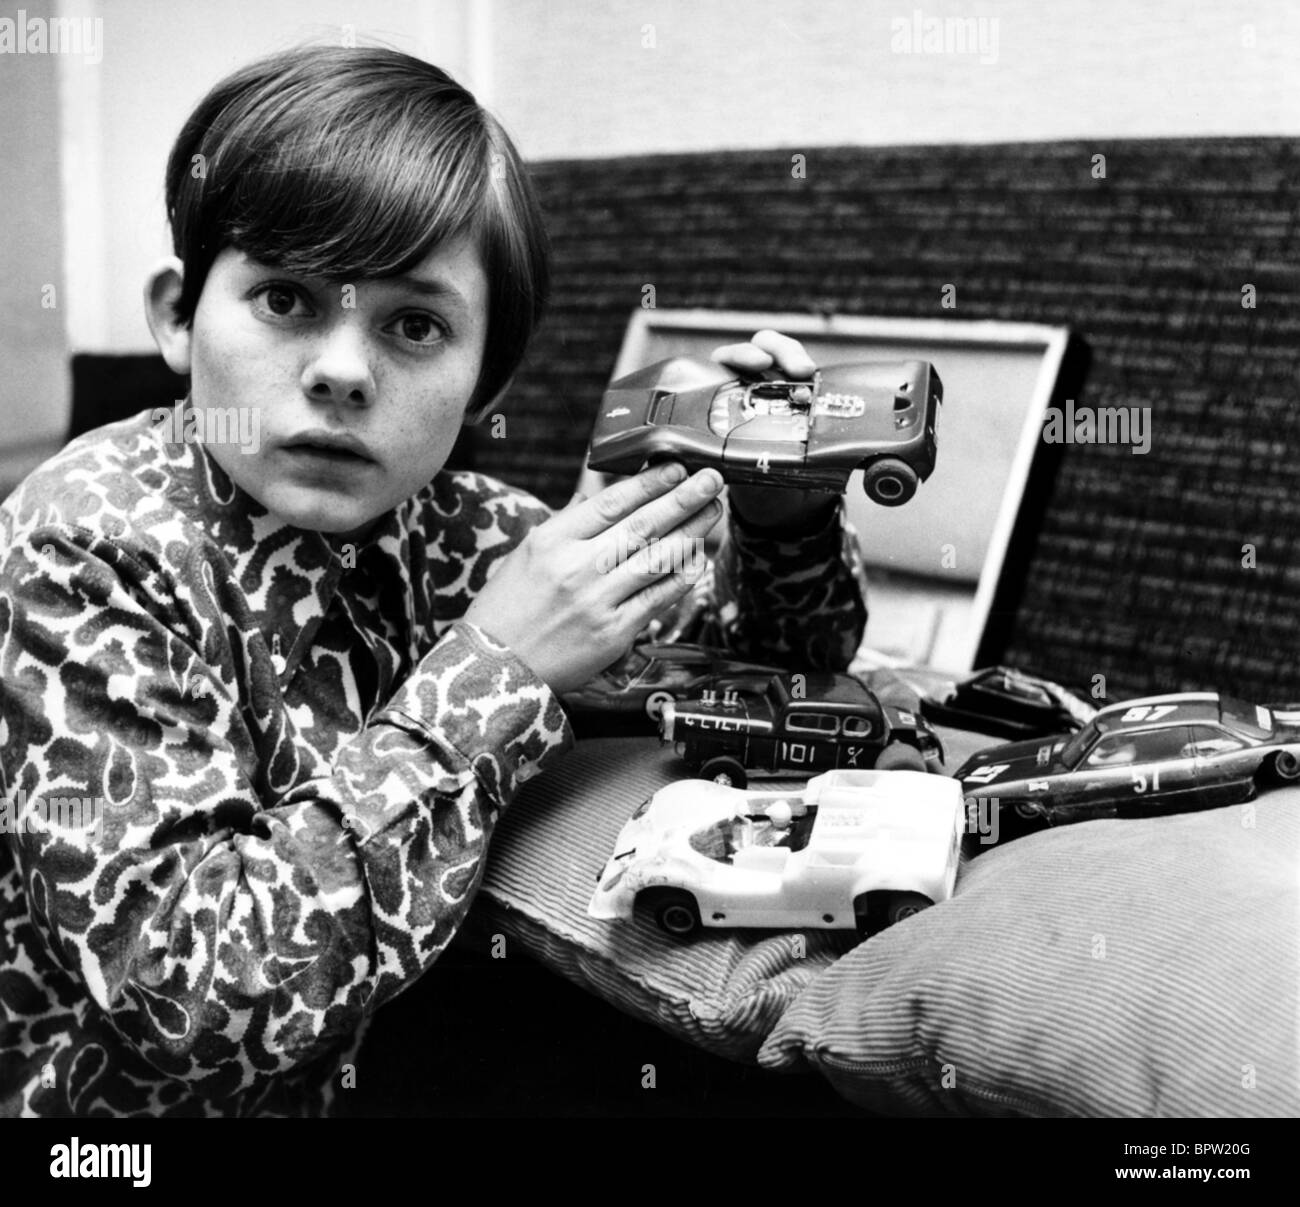 JACK WILD ACTOR (1968) Stock Photo